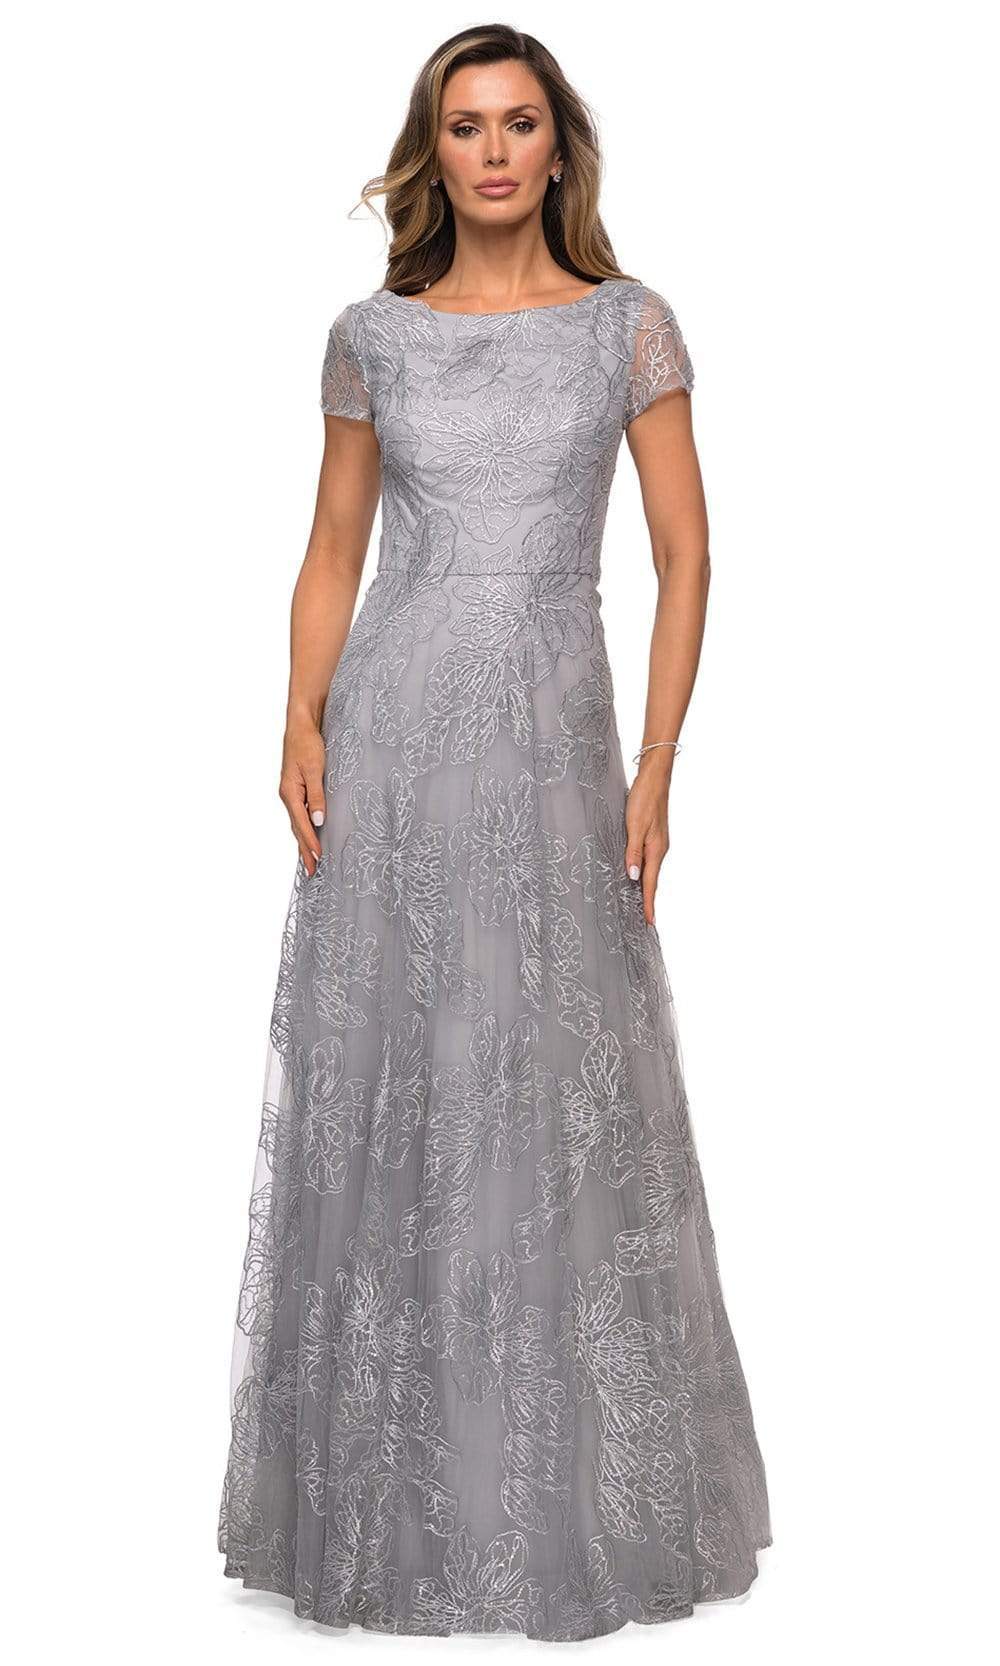 La Femme - 27837 Sequined Lace Bateau A-line Dress – Couture Candy